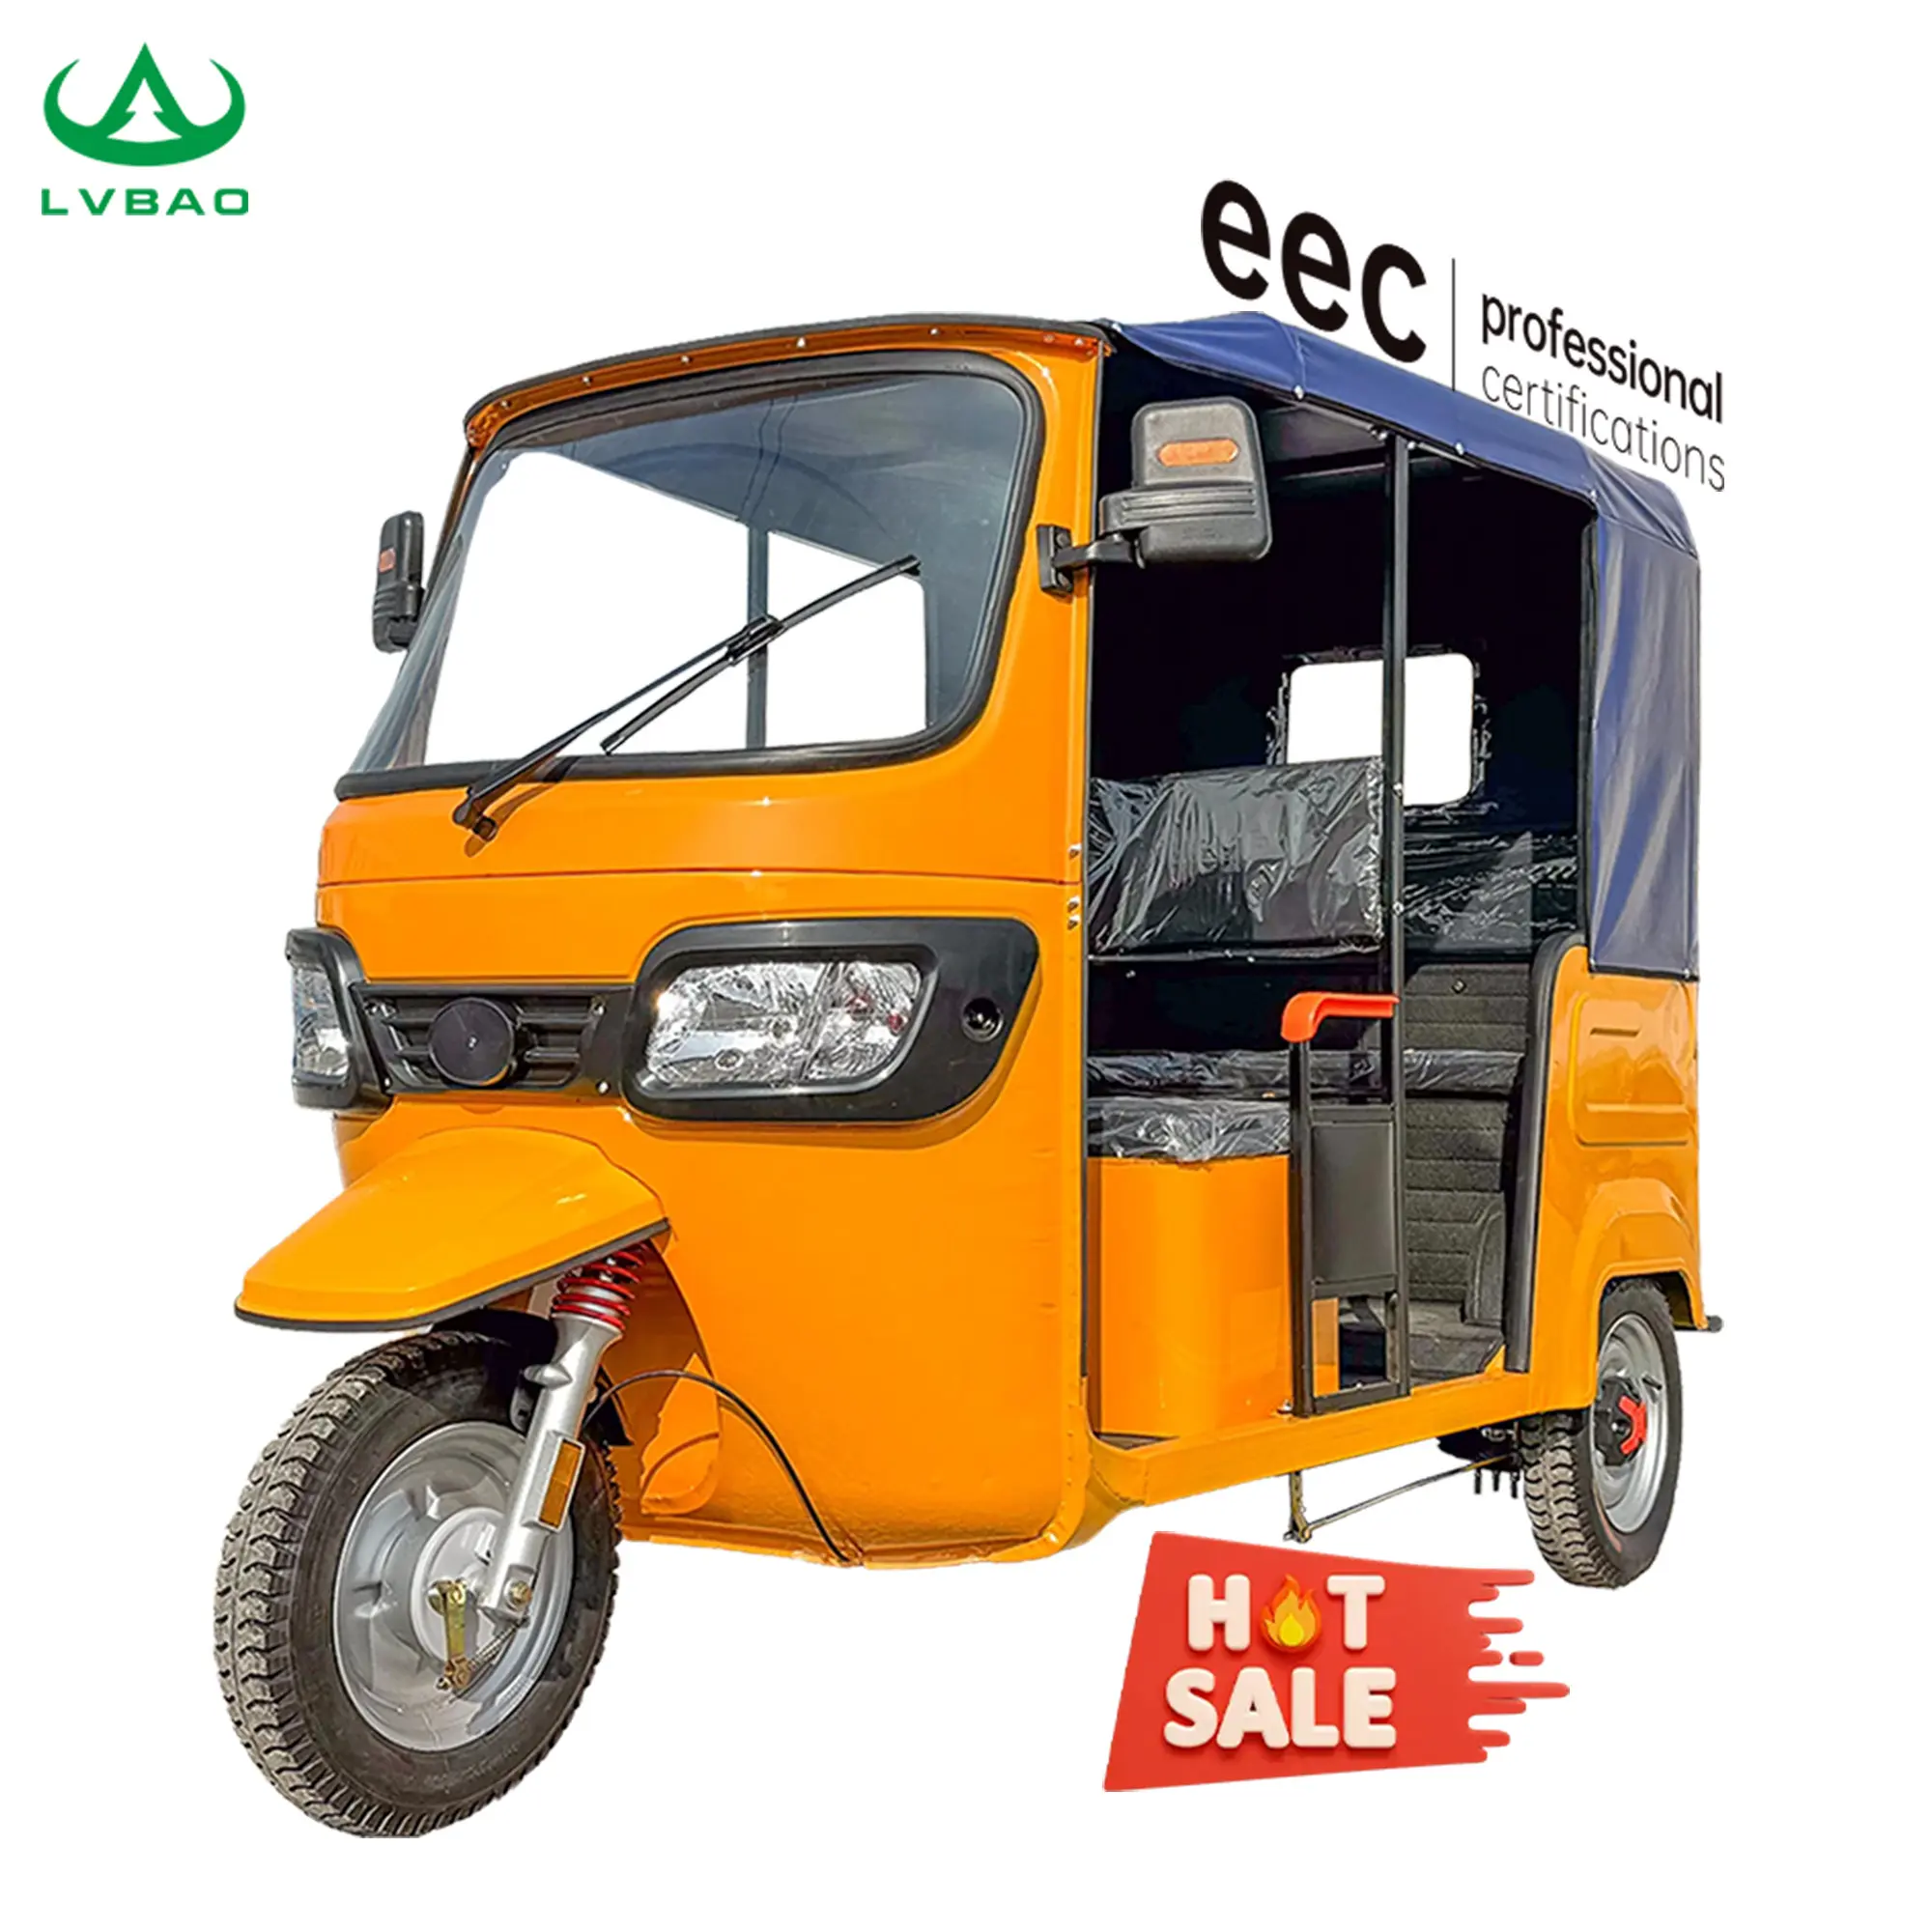 LB-ZK3WY Rickshaw 60vpassenger lityum pil yüksek güç çevre dostu 6 yolcu için 120KM uzun menzilli Rickshaw